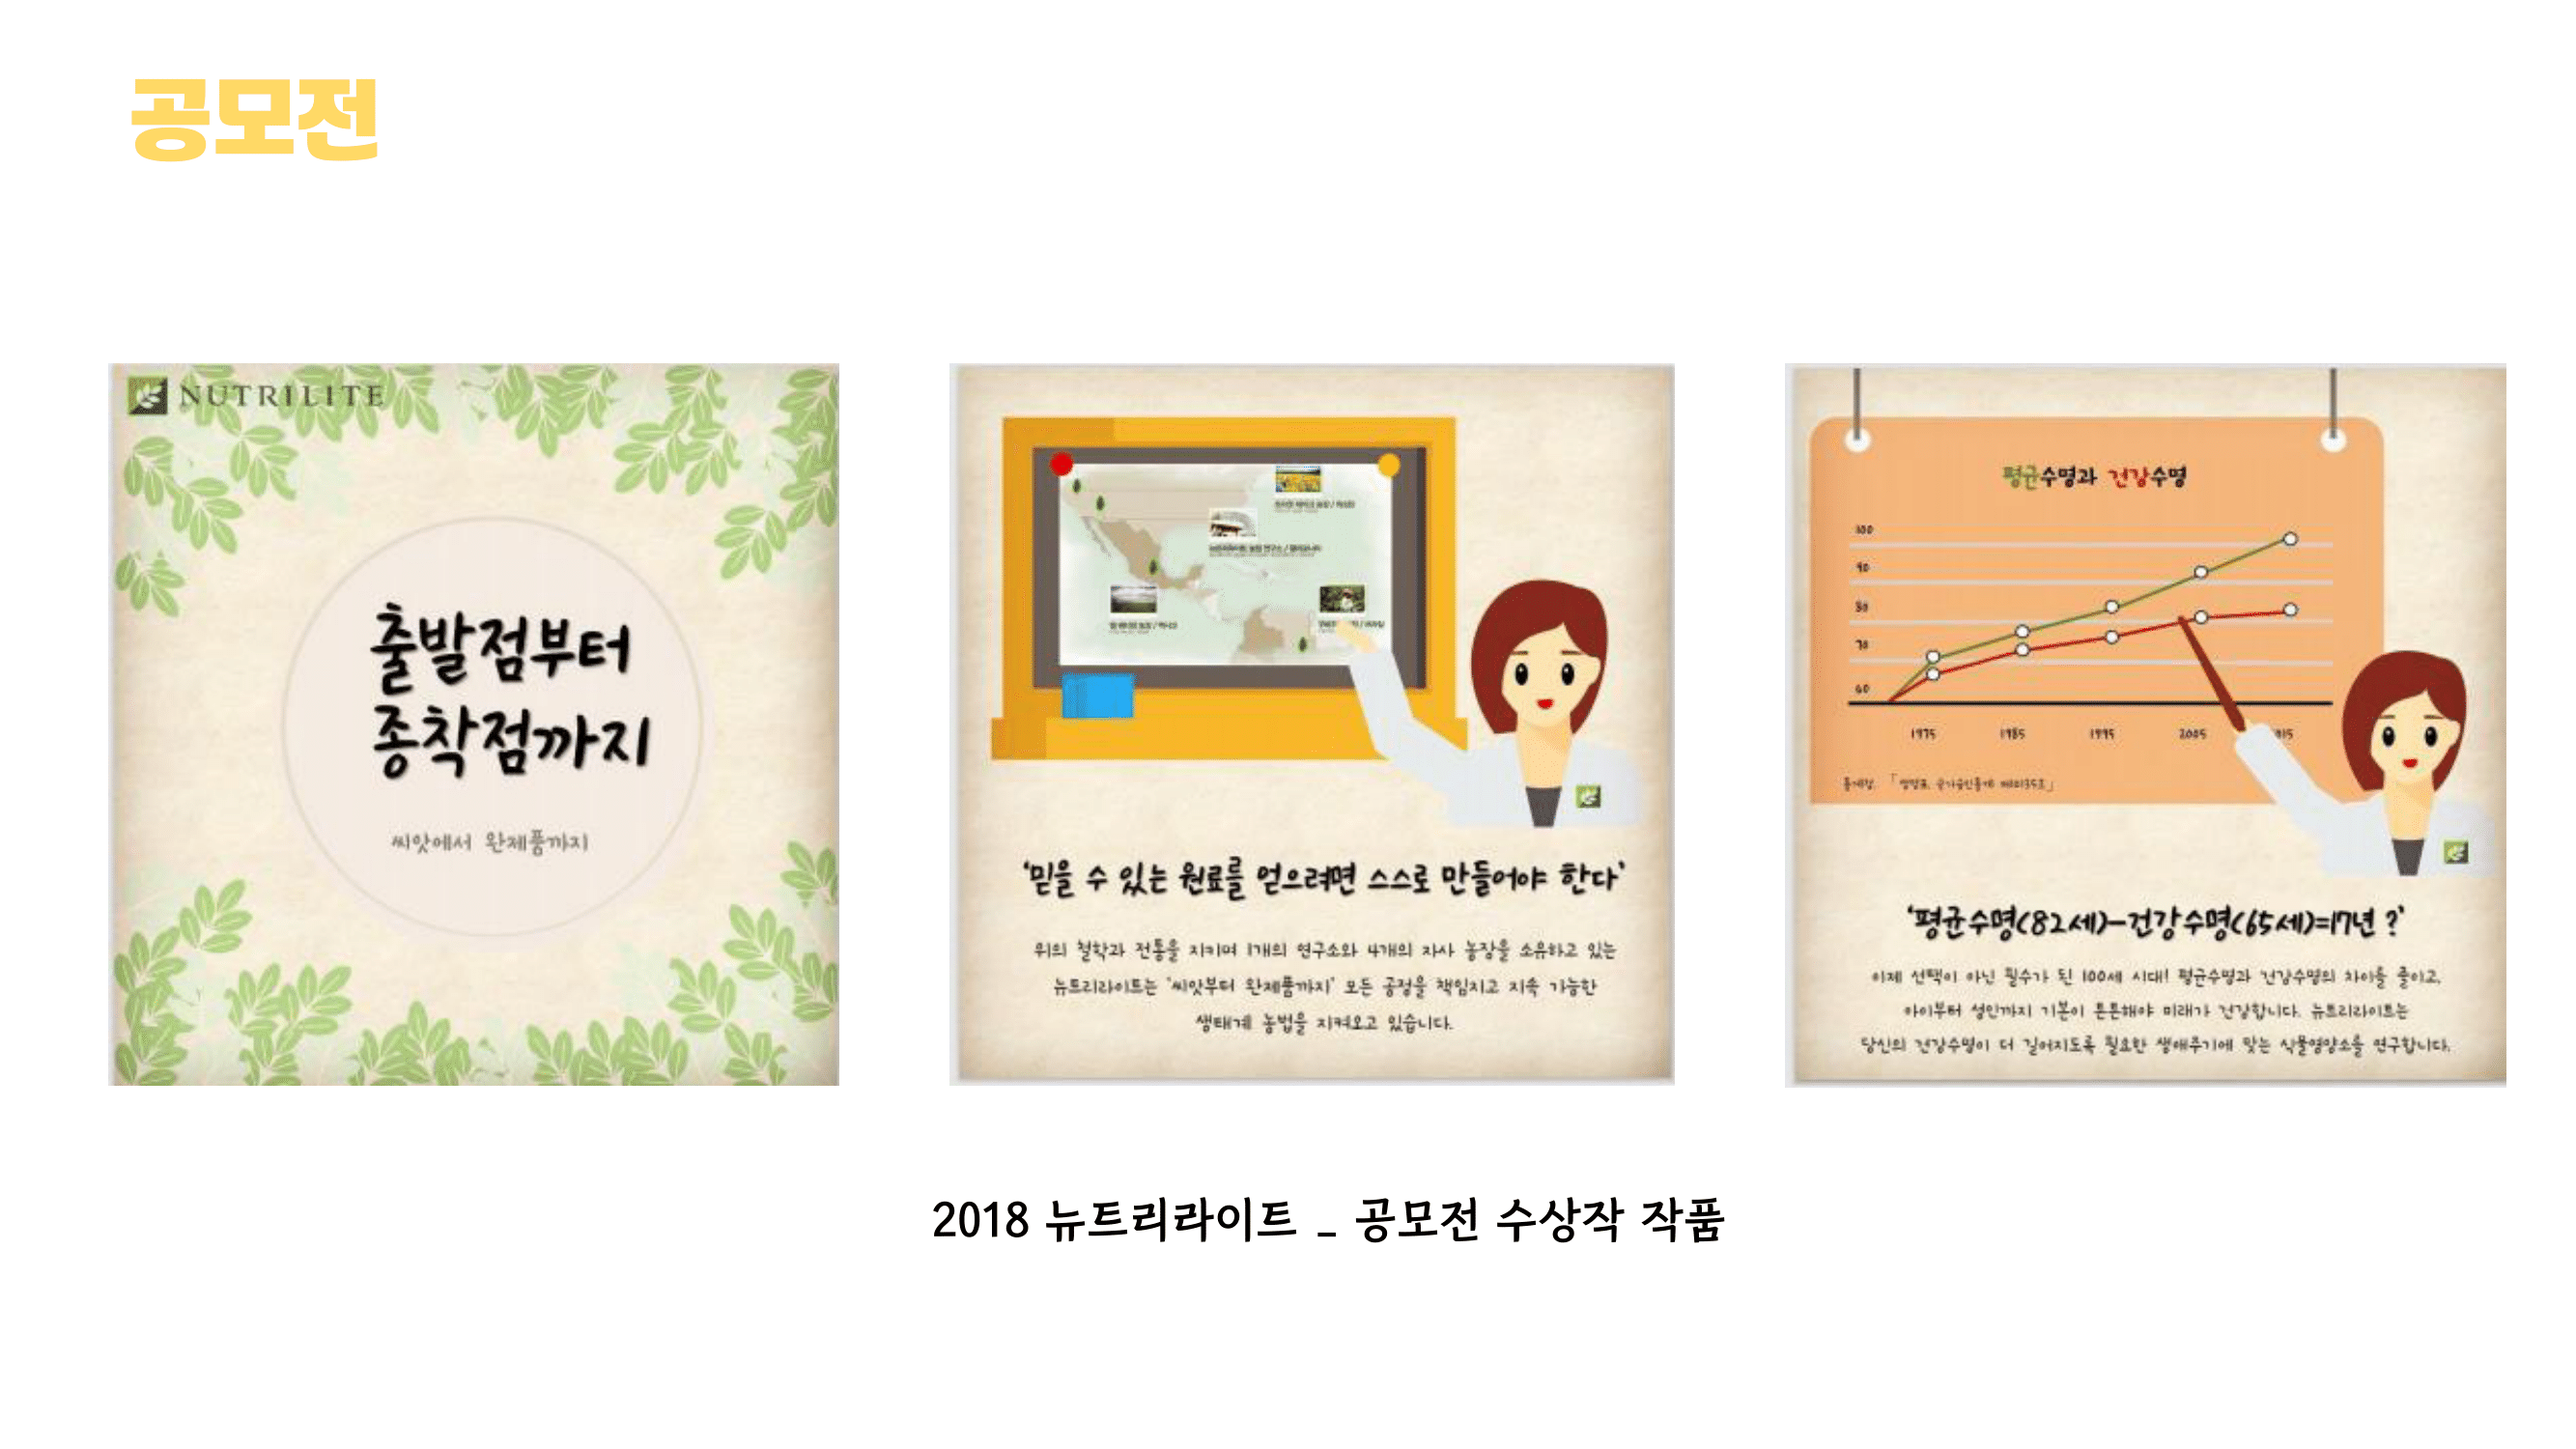 광고/마케팅 기획 동아리 MARS 소개11